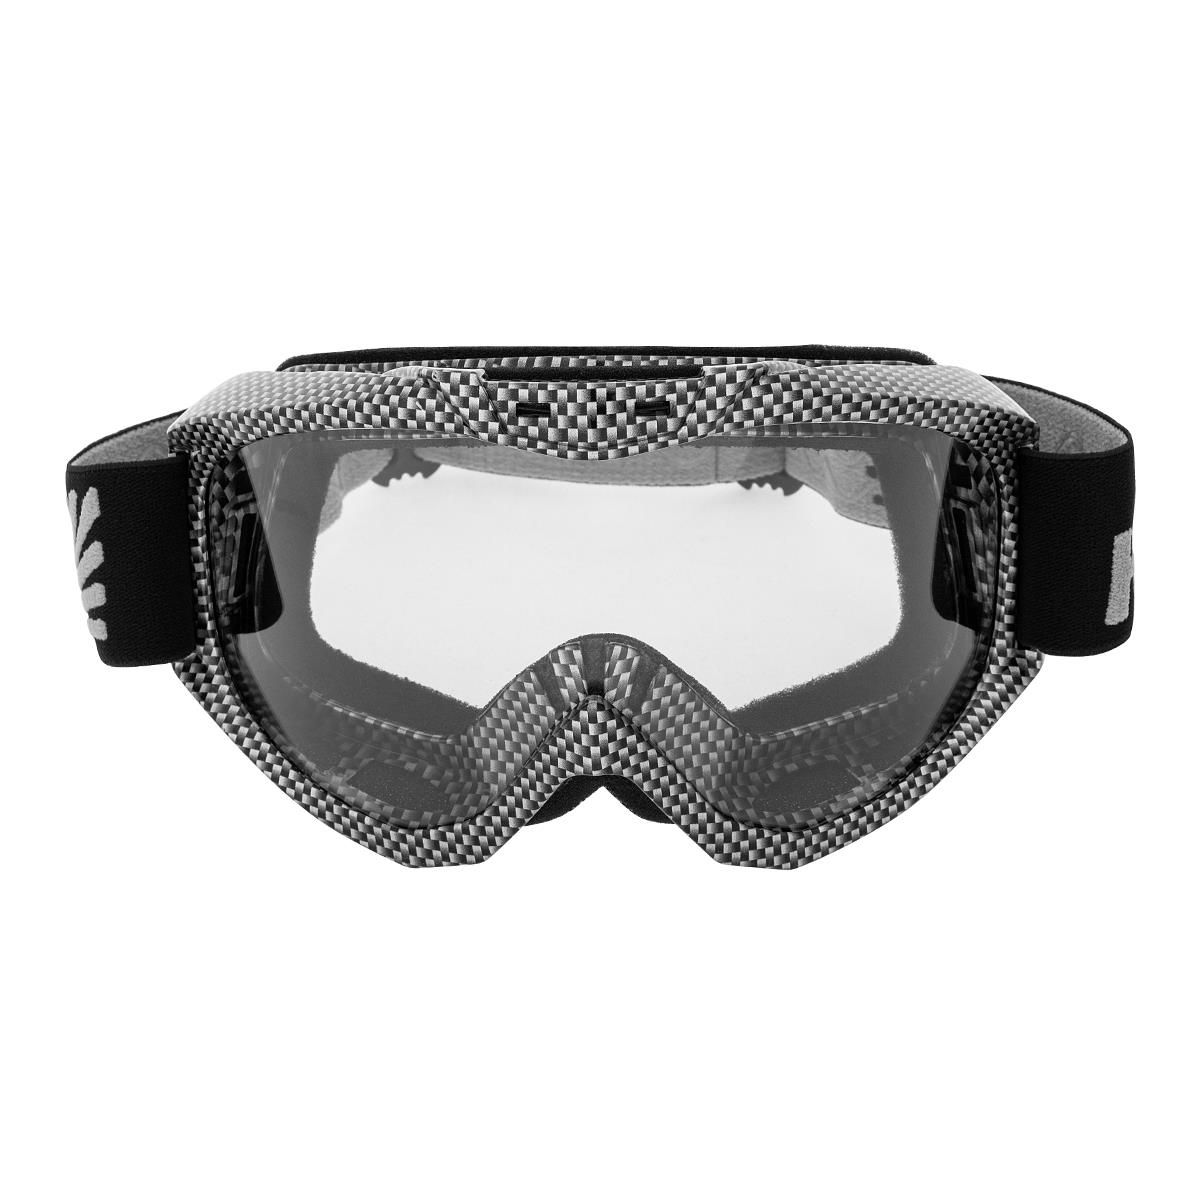 Очки горнолыжные HS-MT-001-C Helios очки маска для езды на мототехнике разборные визор оранжевый